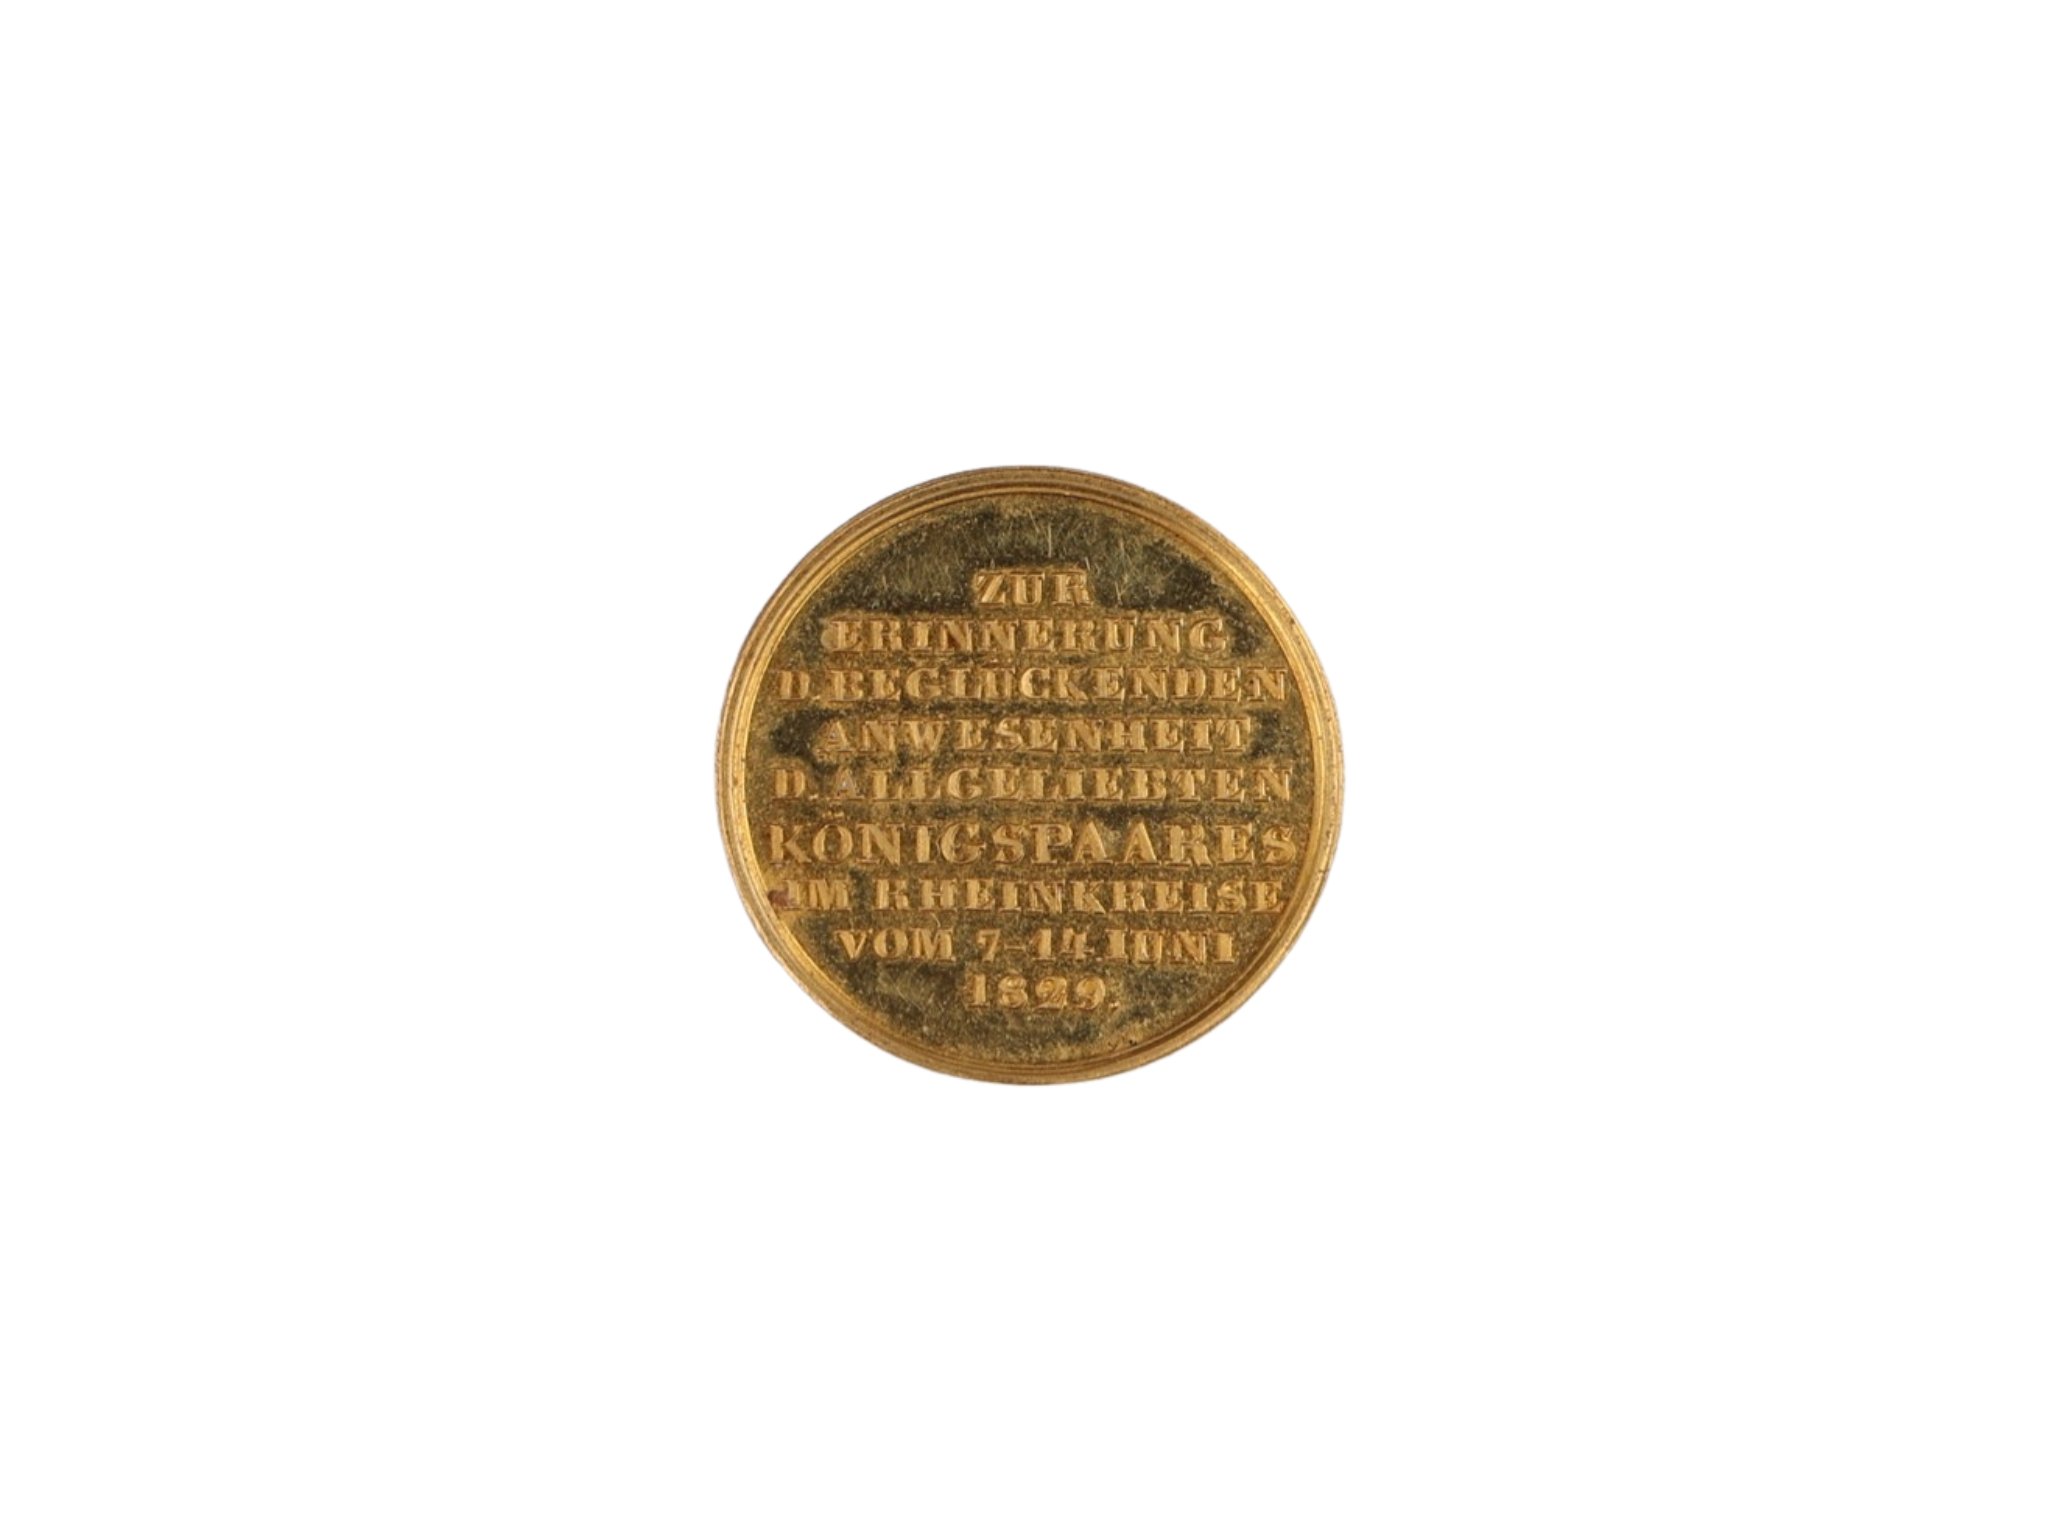 Medaille auf den Besuch des Königspaares im Rheinkreis von 1829 (Historisches Museum der Pfalz - Speyer CC BY)